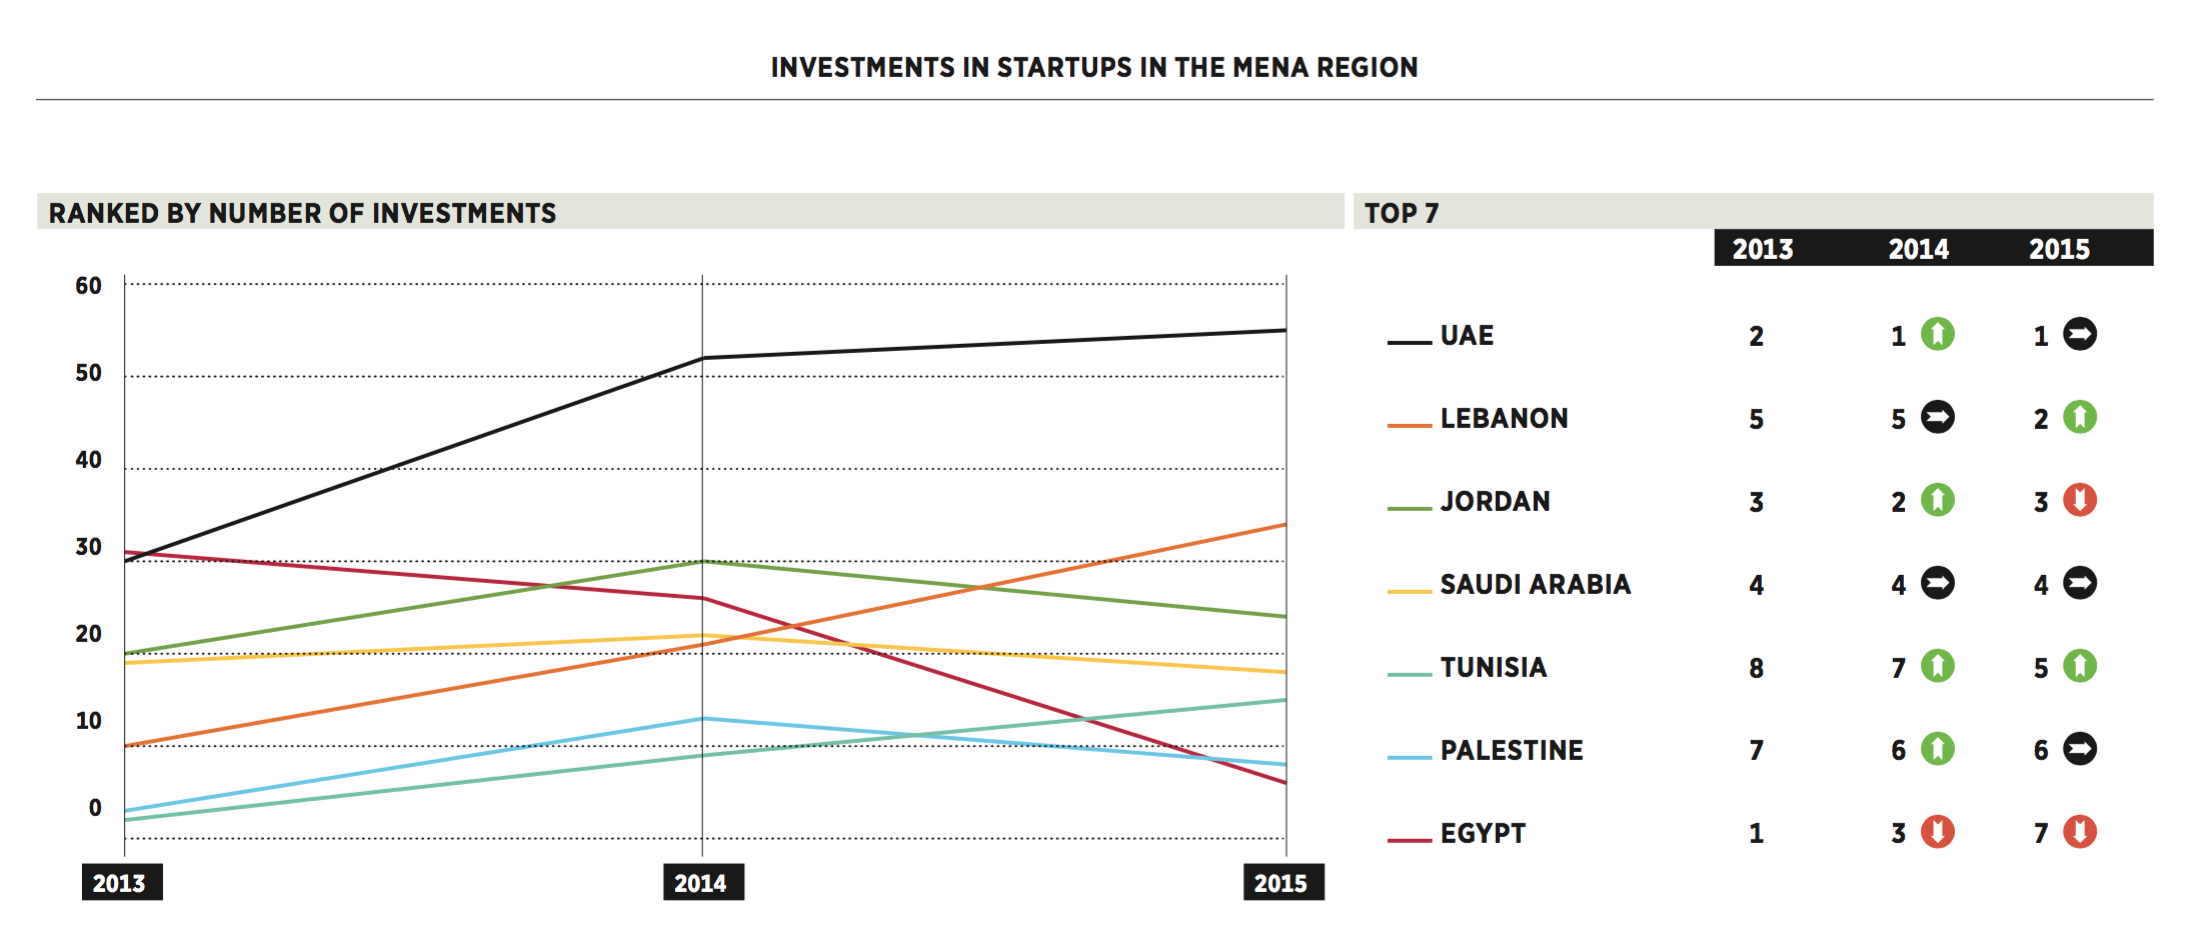 الاستثمارات في دول الشرق الأوسط و شمال أفريقيا بحسب عدد الاستثمارات